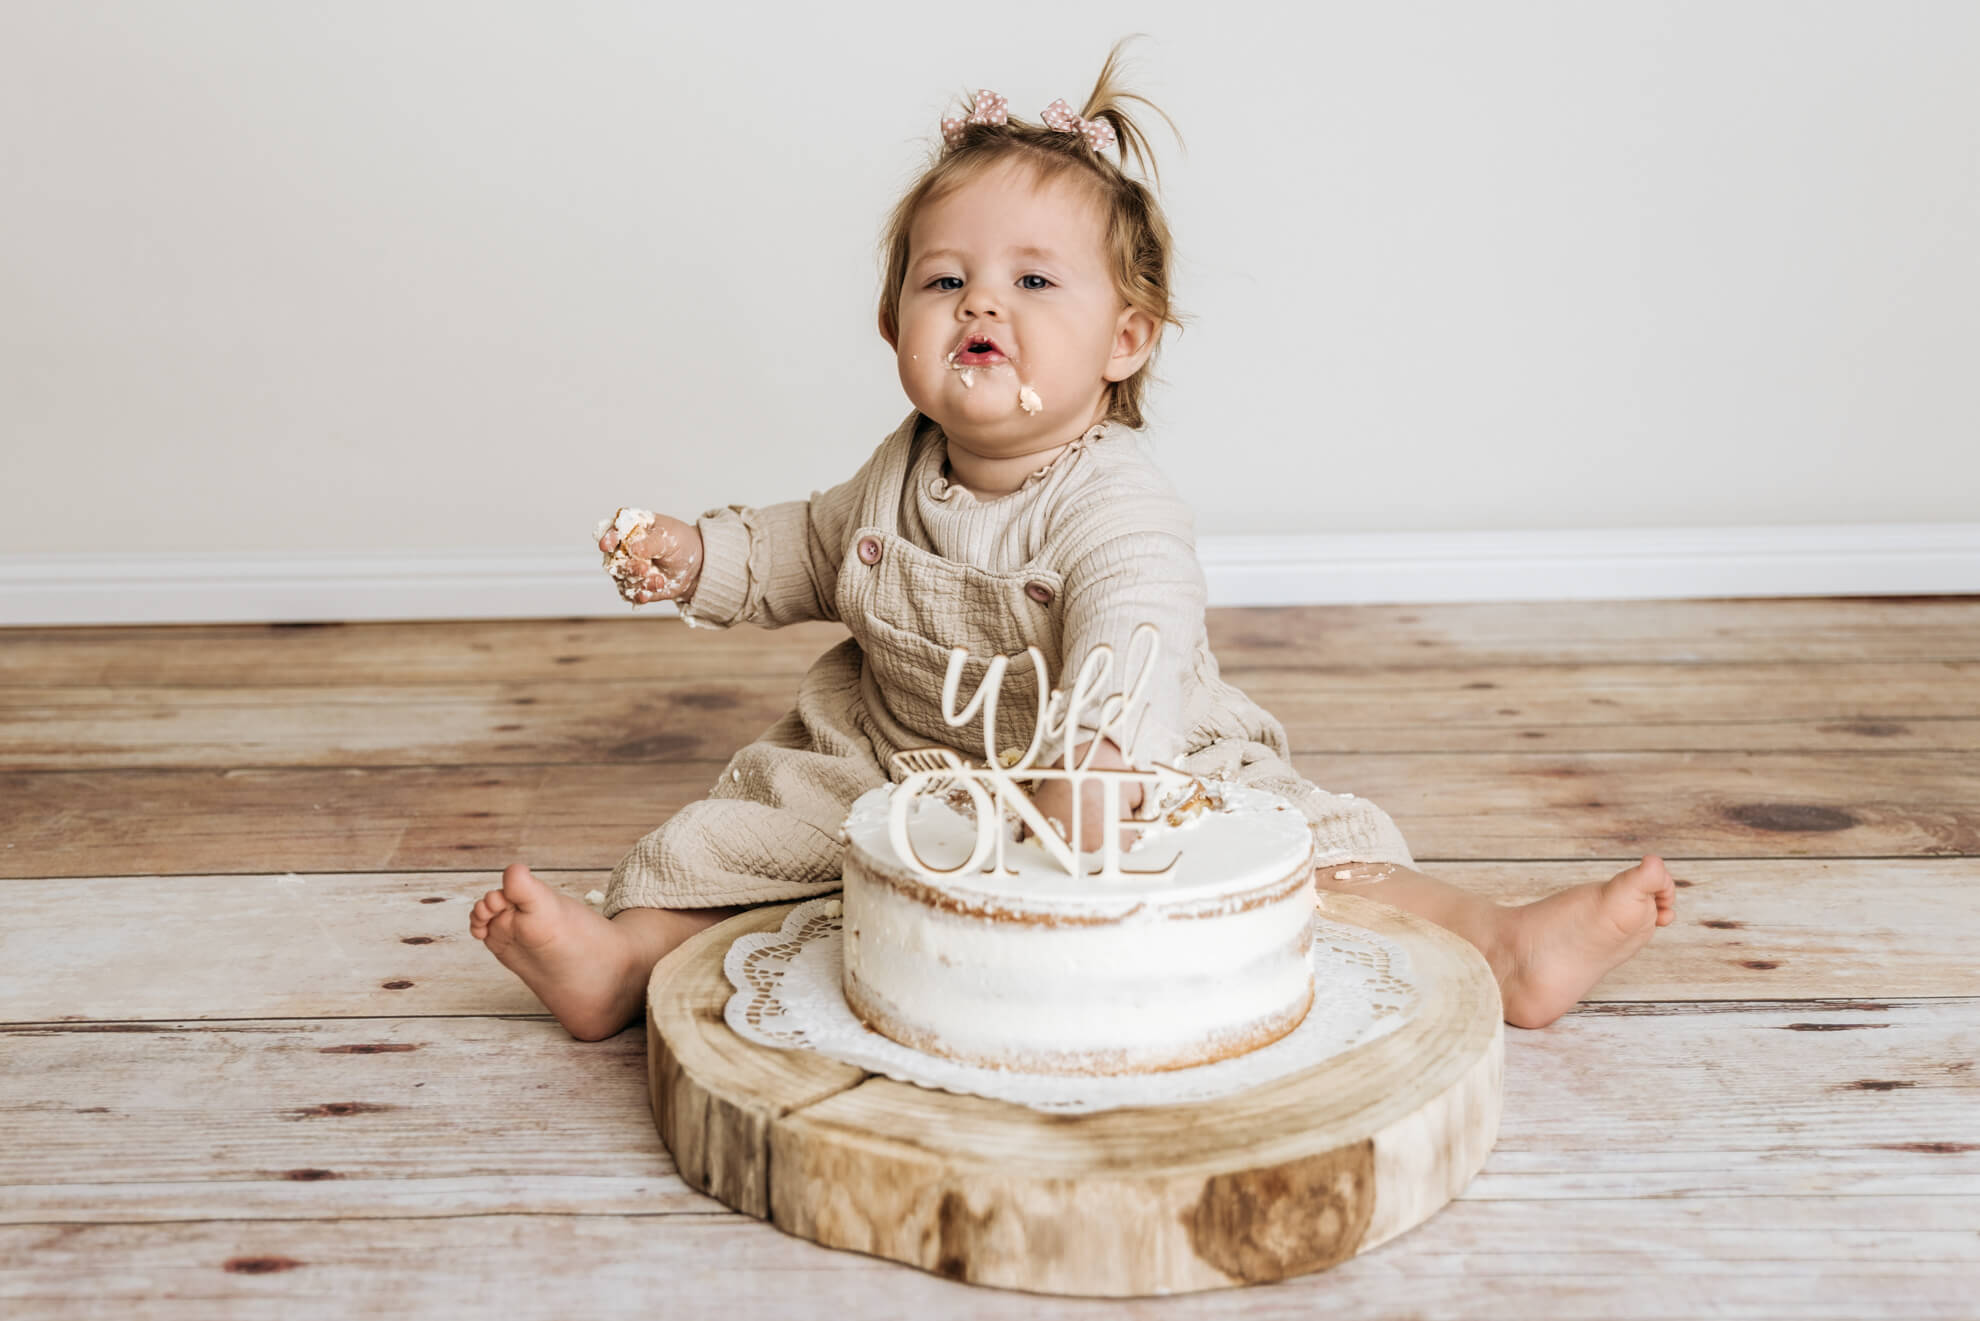 Familien Fotografie Cake Smash Geburtstag Bildgefühle Höchst Odenwald